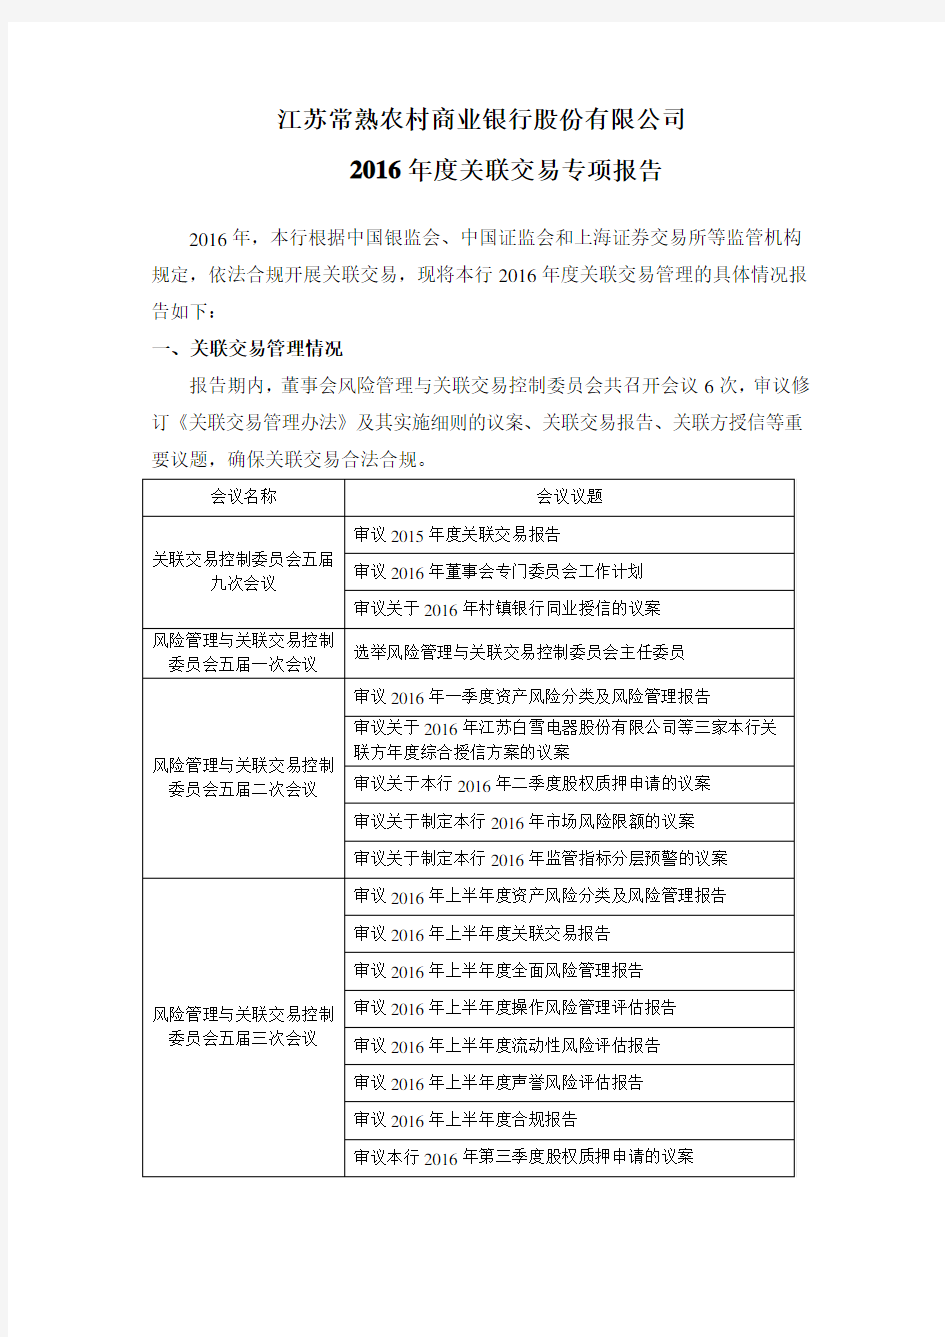 江苏常熟农村商业银行股份有限公司2016年关联交易专项报告